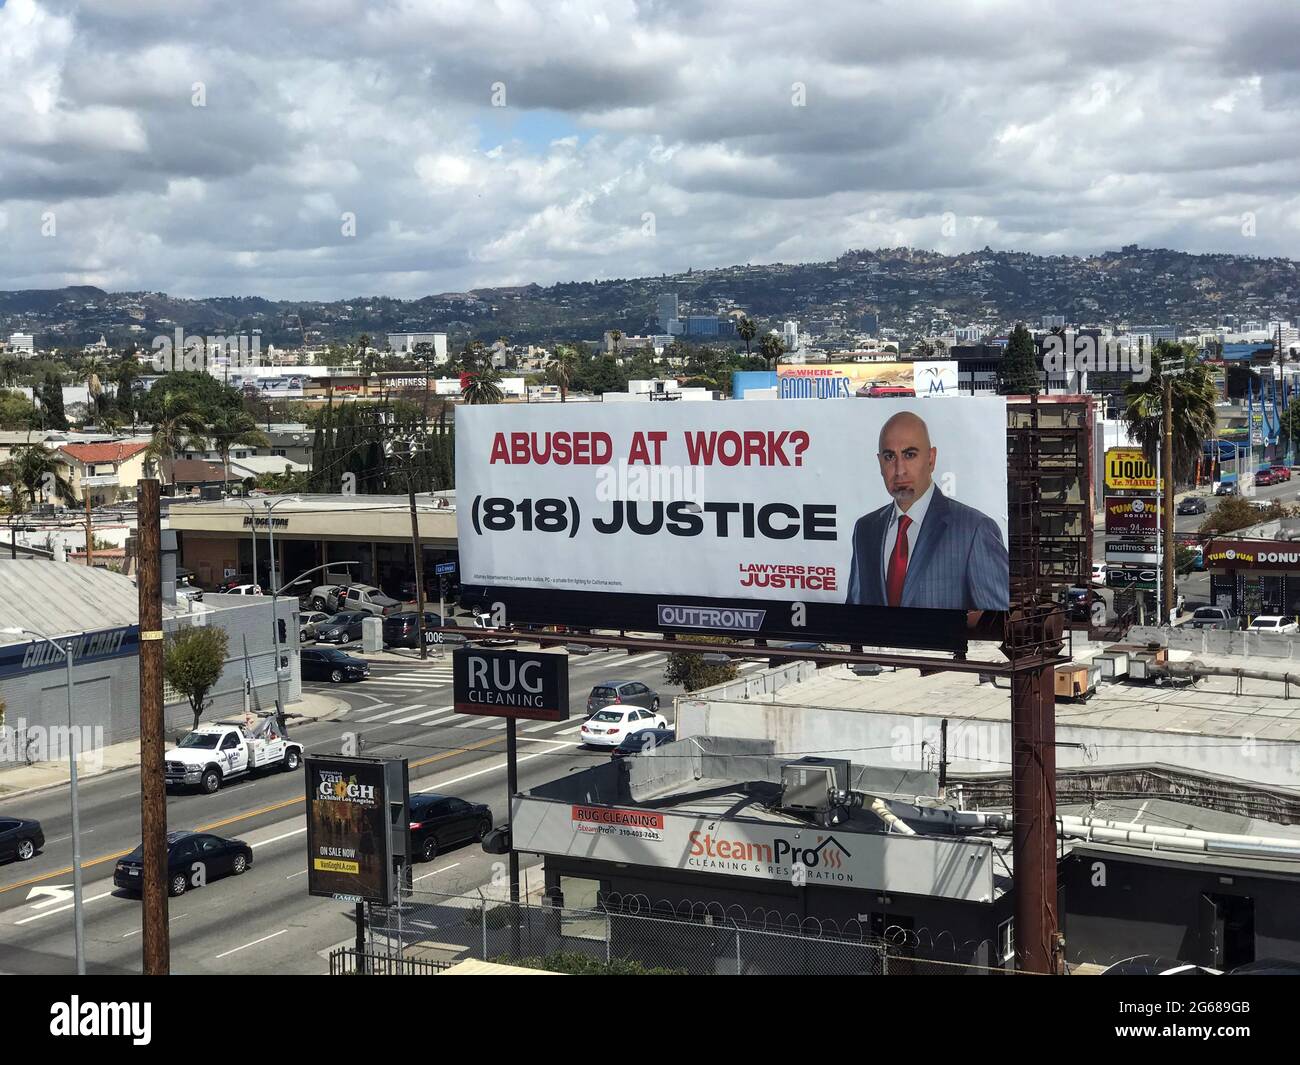 Panneaux publicitaires dans le paysage urbain de Los Angeles annonçant des services juridiques pour abus au travail. Banque D'Images